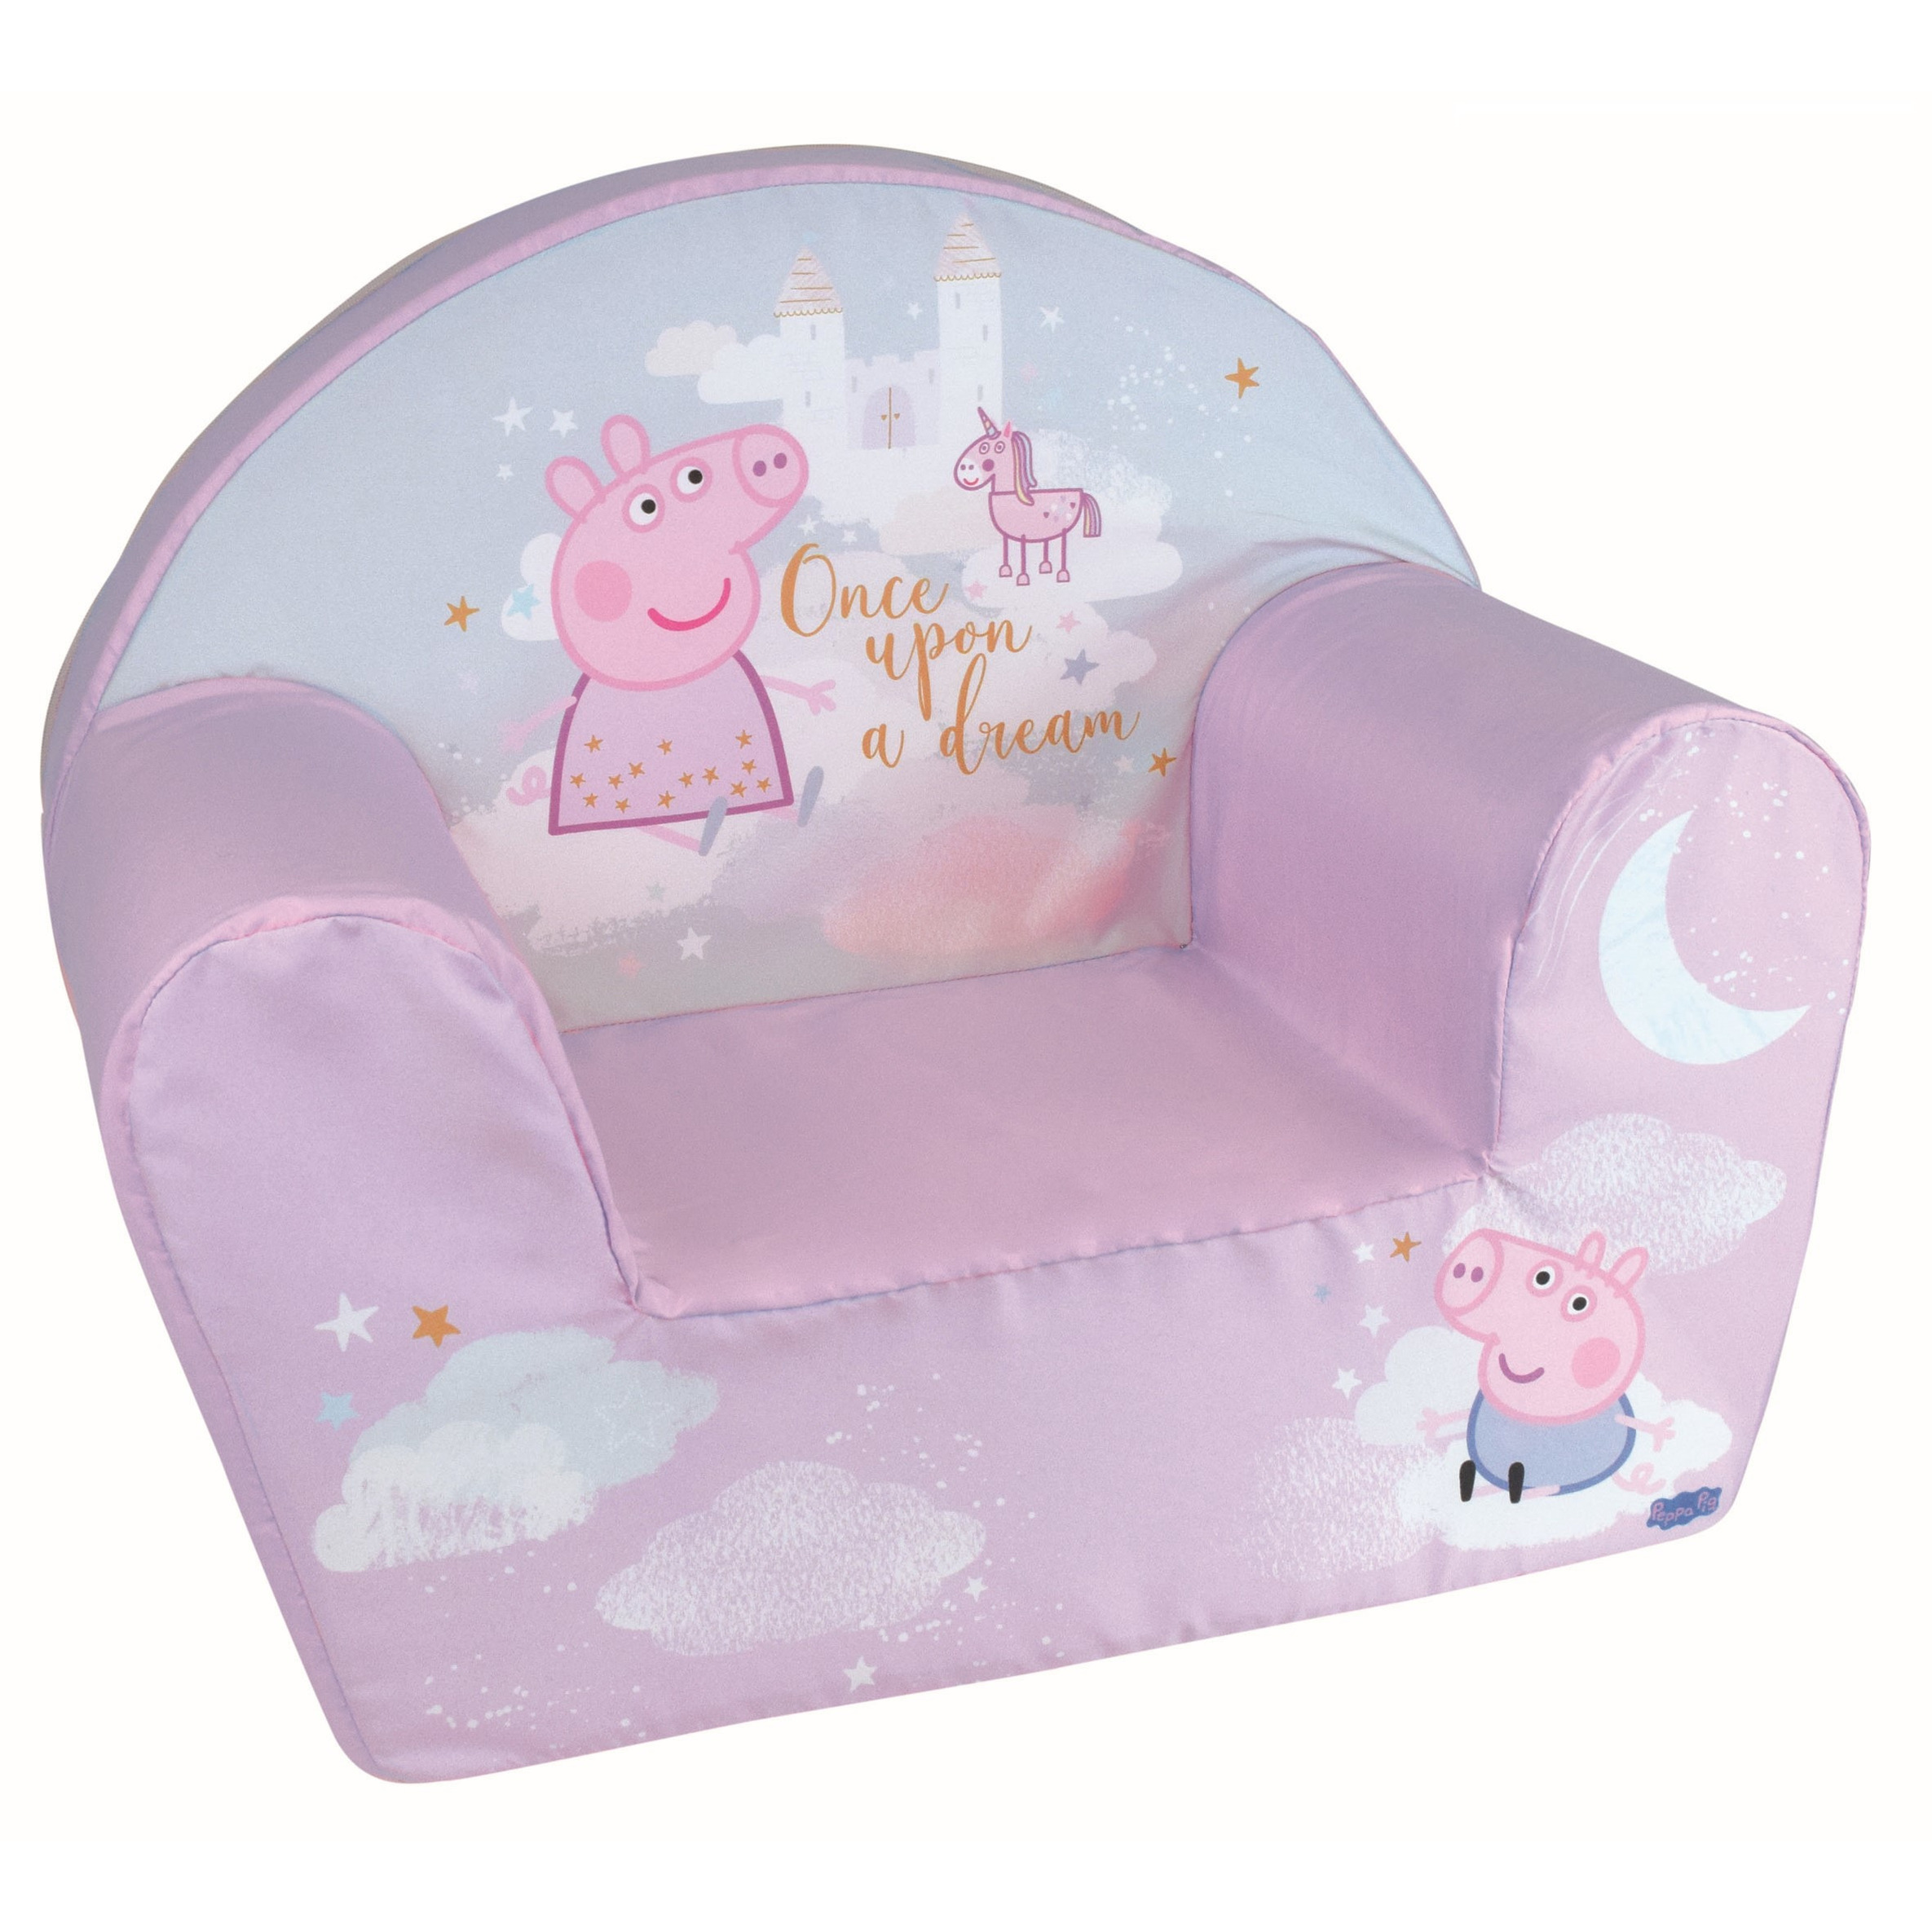 Peppa Pig kinderstoel-kinderfauteuil voor peuters 33 x 52 x 42 cm